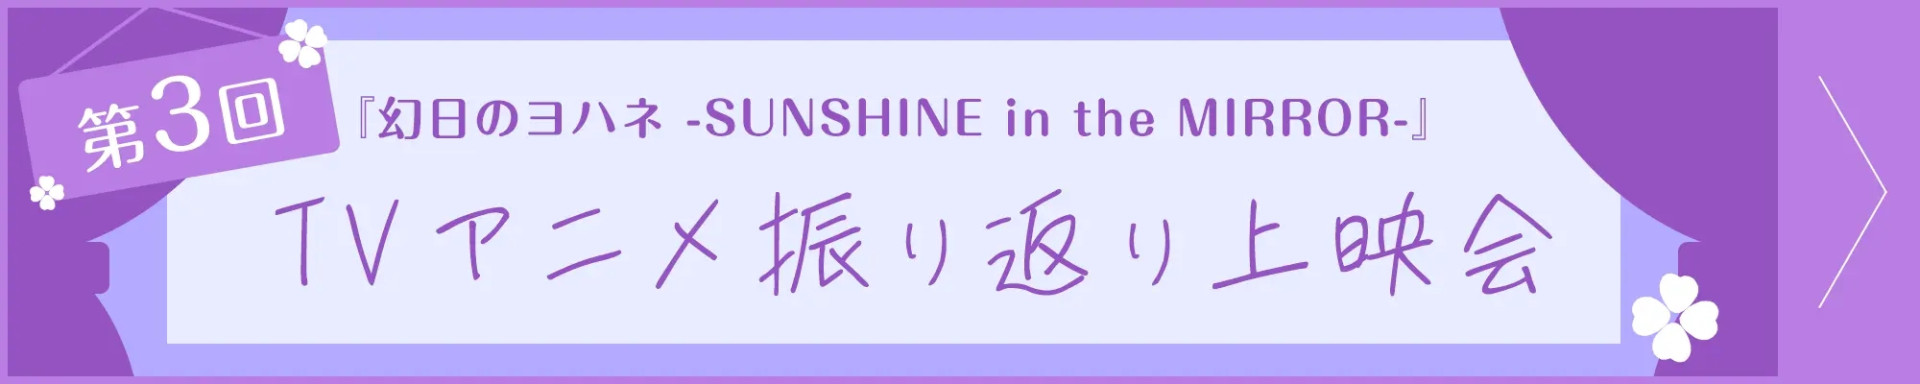 第3回『幻日のヨハネ -SUNSHINE in the MIRROR-』TVアニメ振り返り上映会